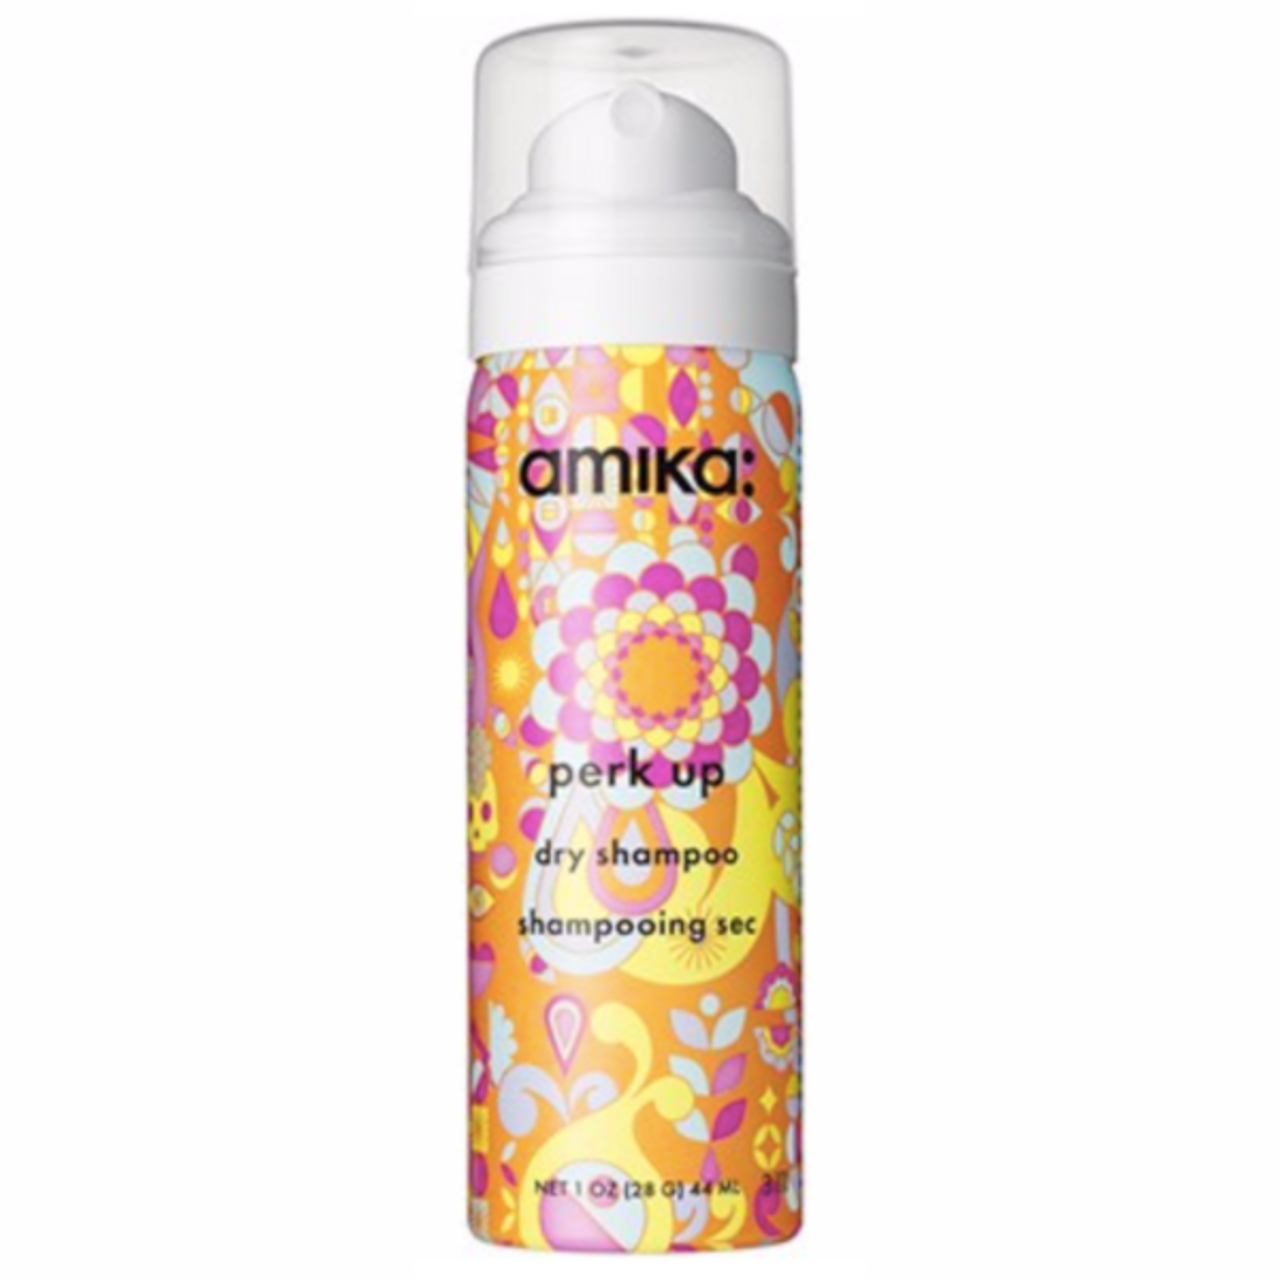 Amika Perk Up Dry Shampoo - 1 oz